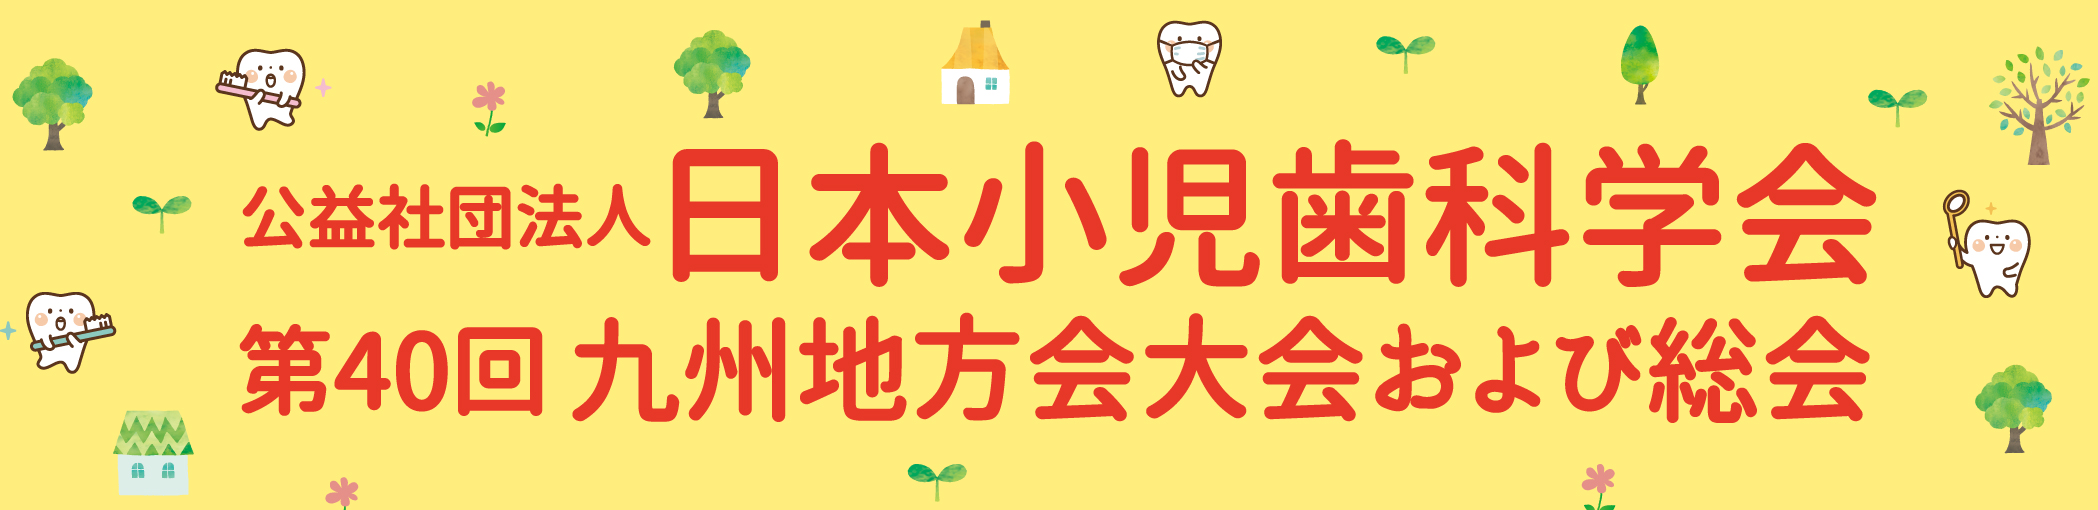 公益社団法人日本小児歯科学会第40回九州地方会大会および総会